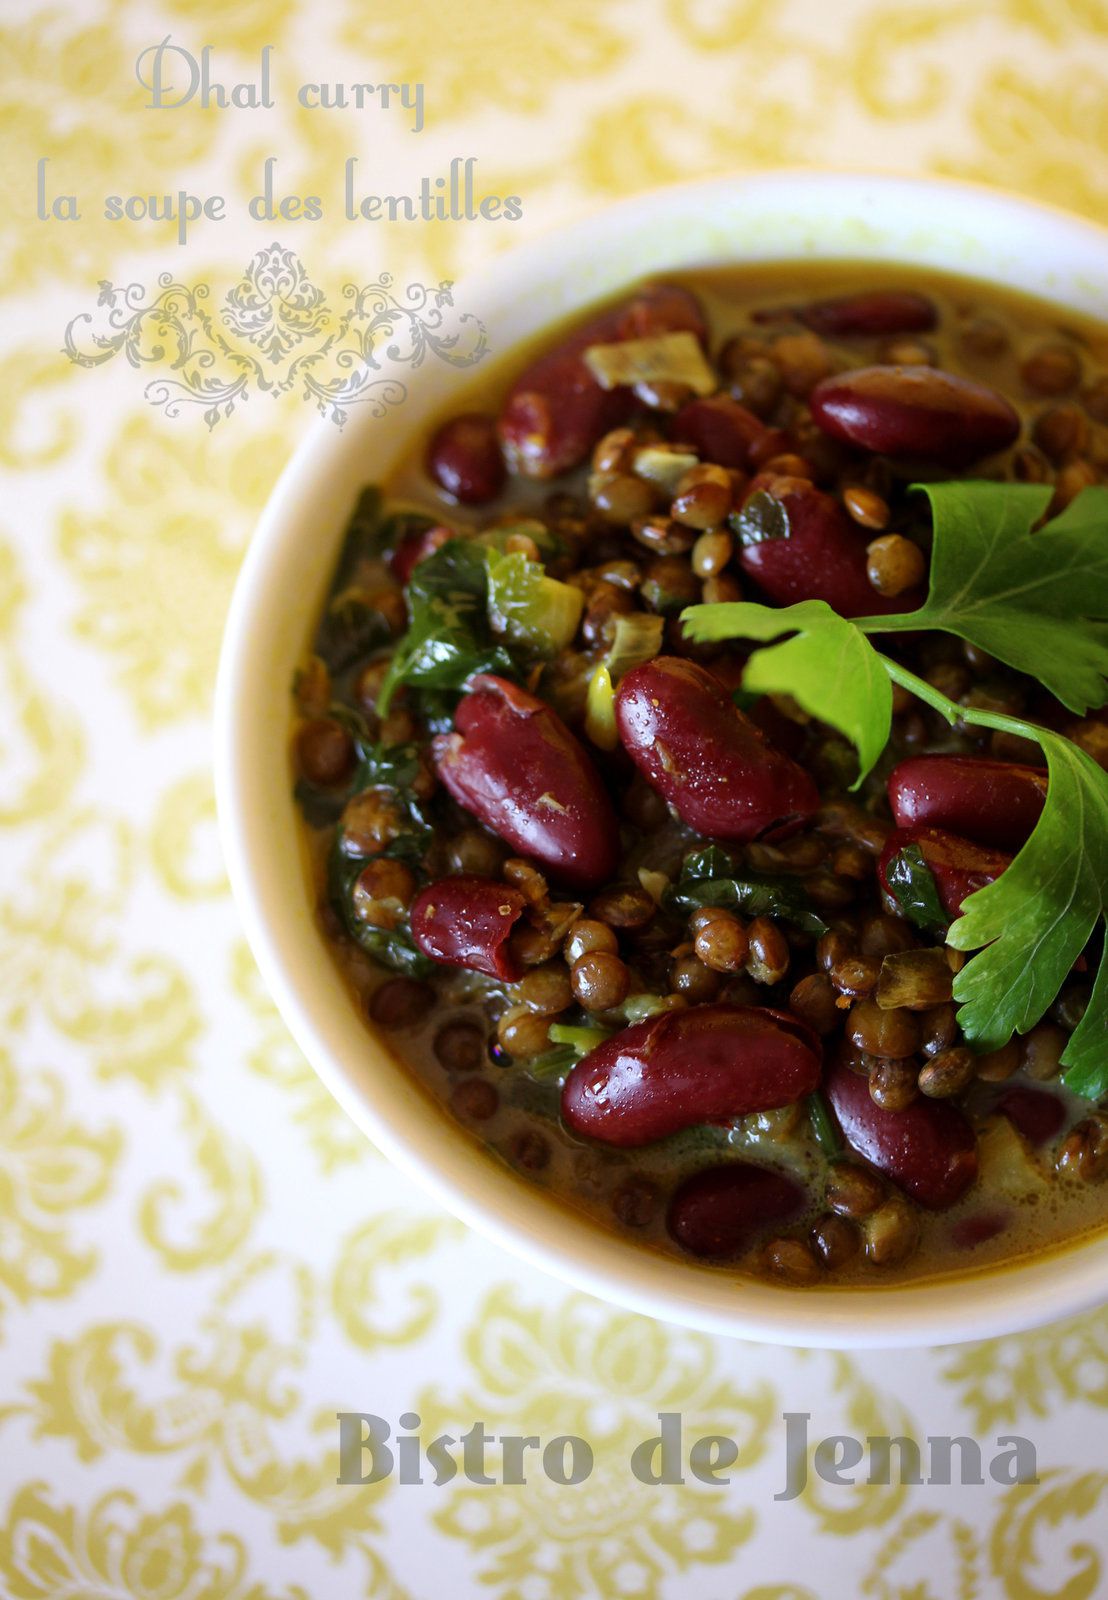 Dhal curry - la soupe des lentilles 